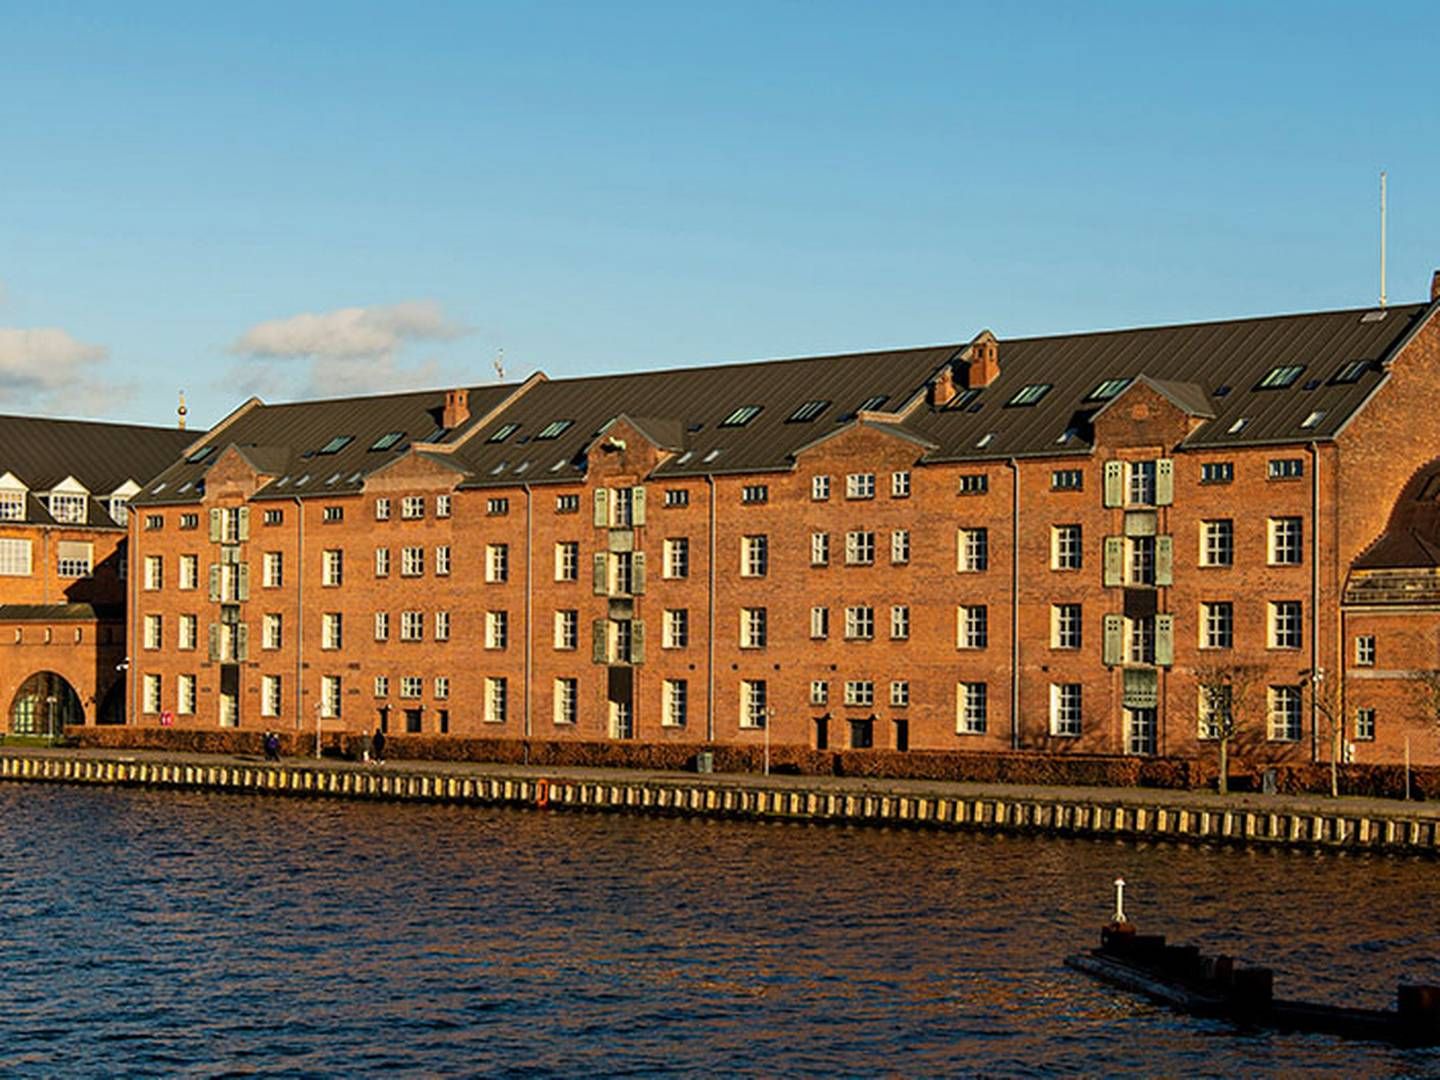 C.W. Obel Ejendomme overtog for ti år siden de mere end 100 år gamle pakhusbygninger på Langebrogade ud til Københavns Havn, der i sin tid blev anvendt af De Danske Sukkerfabrikker. | Foto: PR